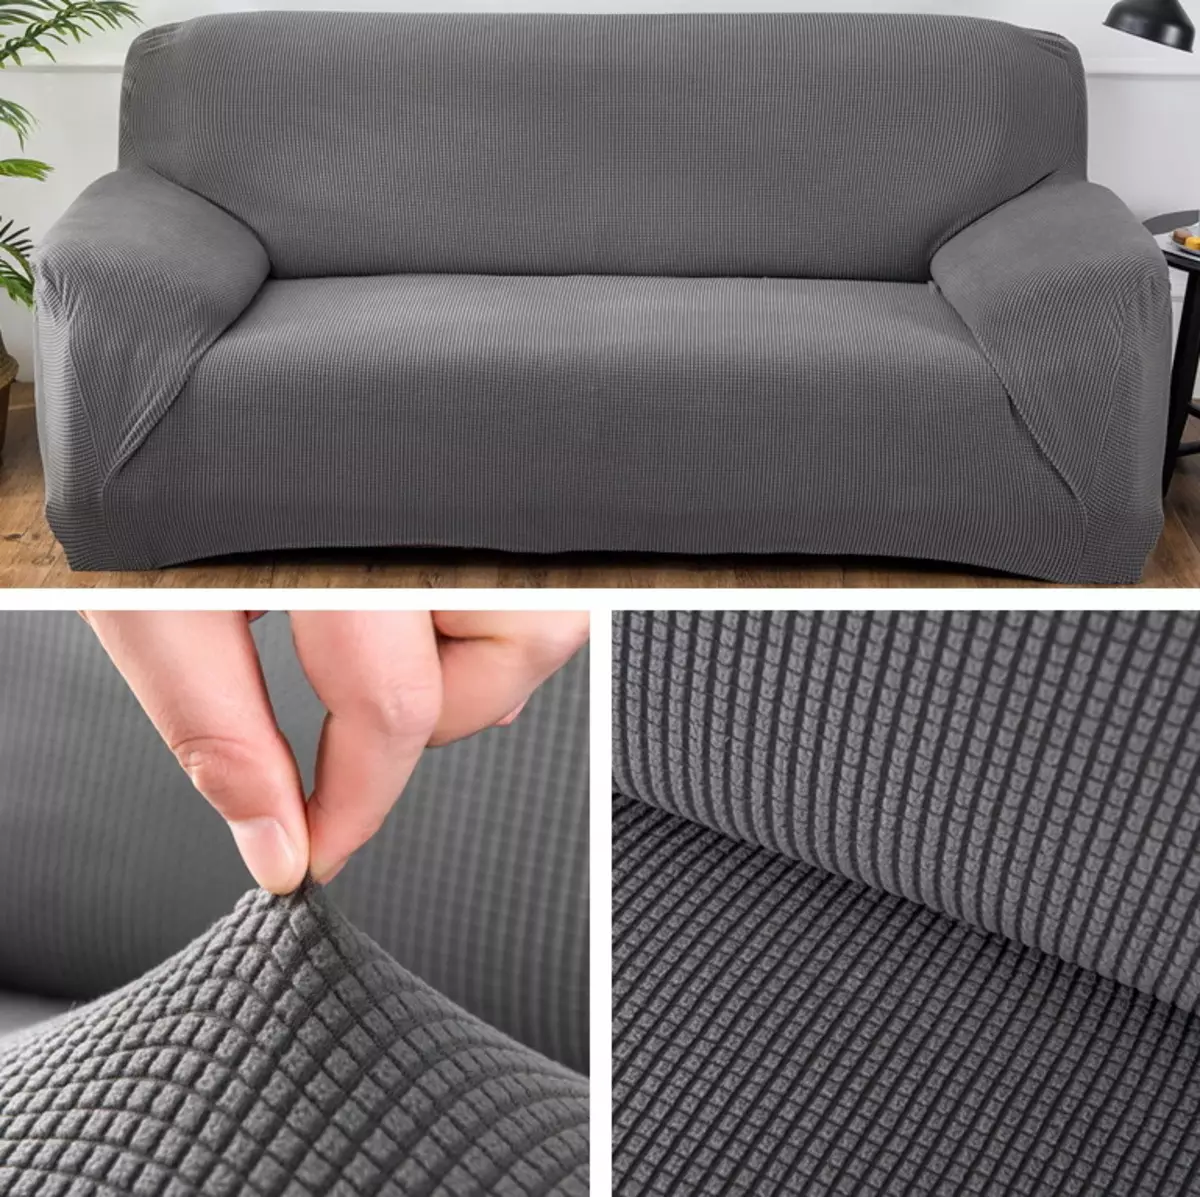 Θήκη στον καναπέ IKEA: Επιλογή κλινοσκεπασμάτων για γωνιακούς καναπέδες χωρίς υποβραχιόνια, καθολικά καλύμματα και άλλες επιλογές 8963_6